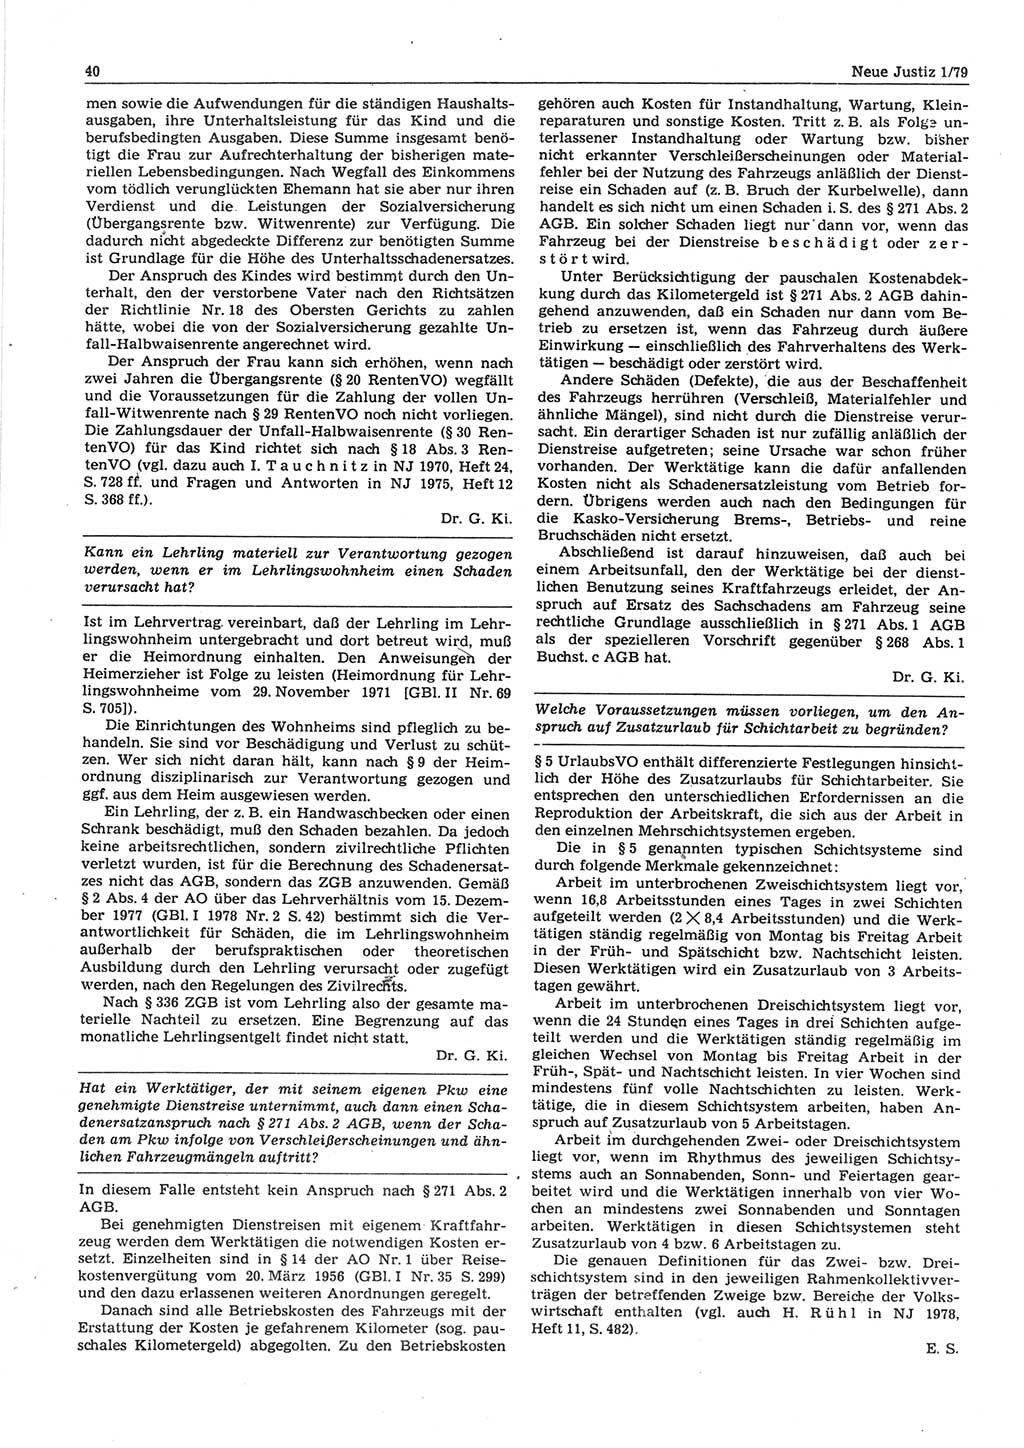 Neue Justiz (NJ), Zeitschrift für sozialistisches Recht und Gesetzlichkeit [Deutsche Demokratische Republik (DDR)], 33. Jahrgang 1979, Seite 40 (NJ DDR 1979, S. 40)